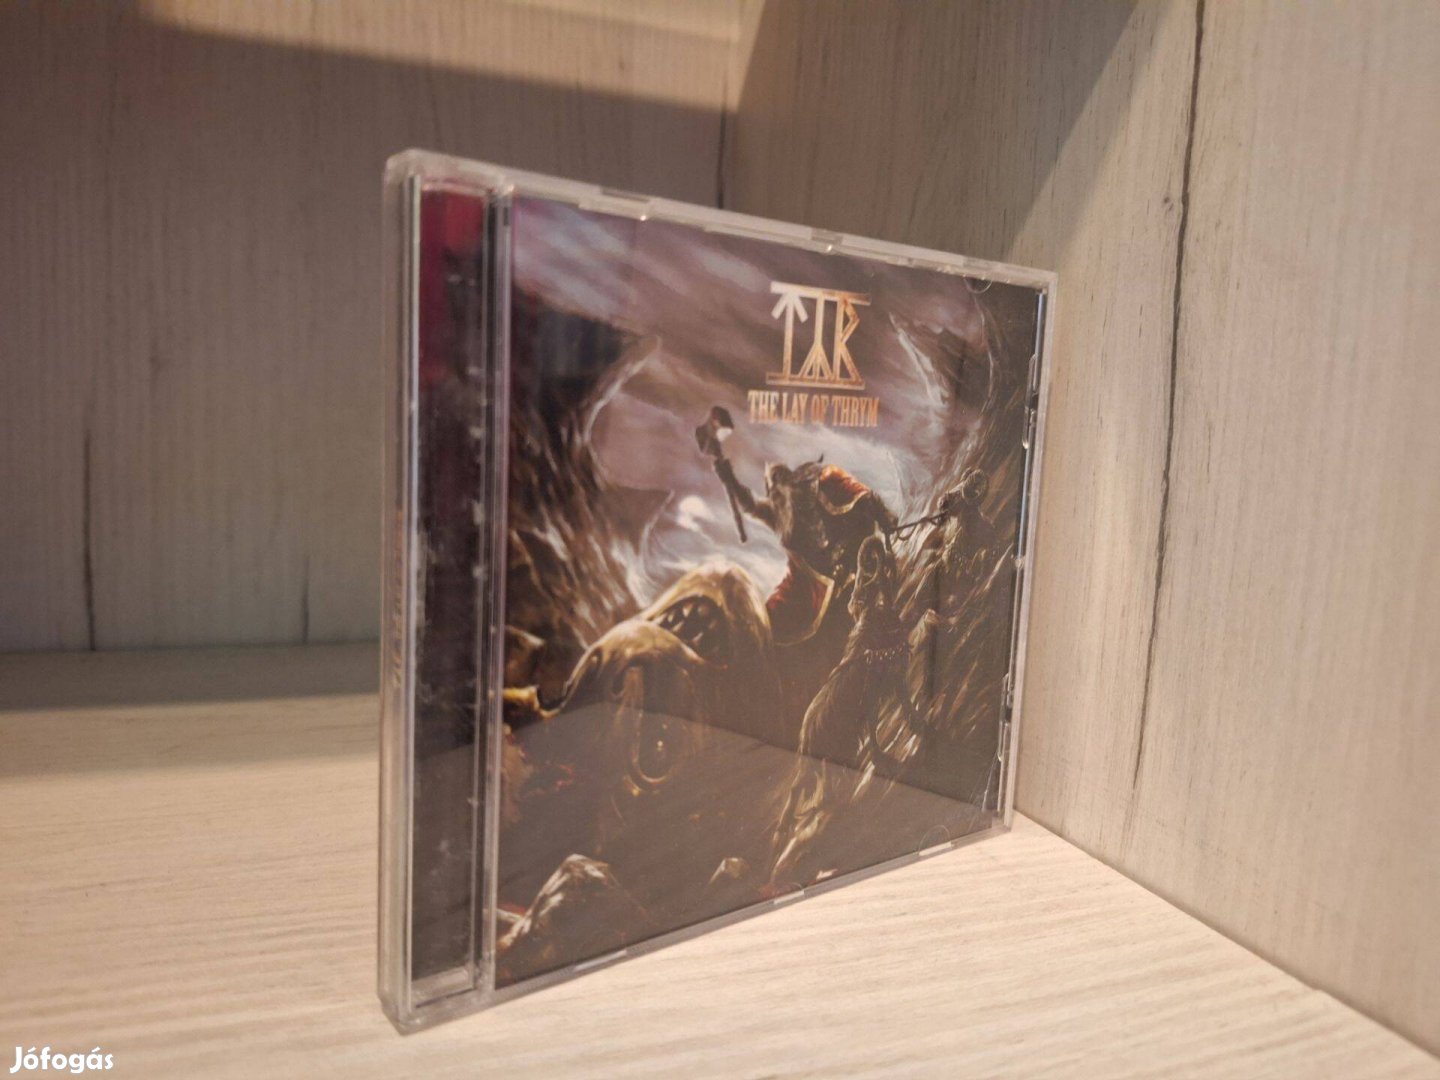 Týr - The Lay Of Thrym CD